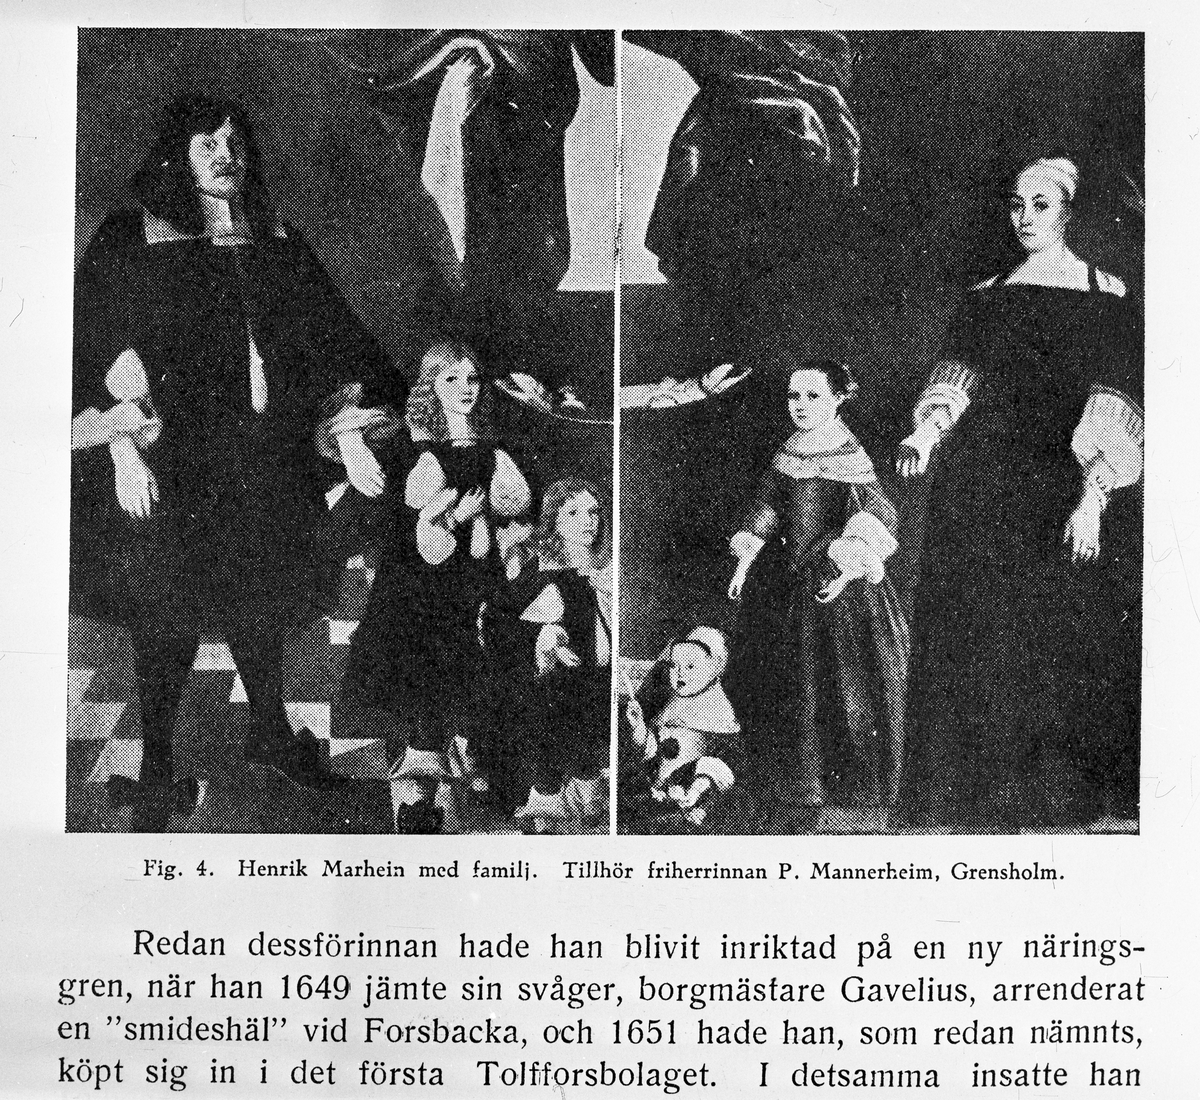 Henrik Marhein med familj. ".... 1649 jämte sin svåger, borgmästare Gavelius, arrenderat en "smideshäl" vid Forsbacka...."